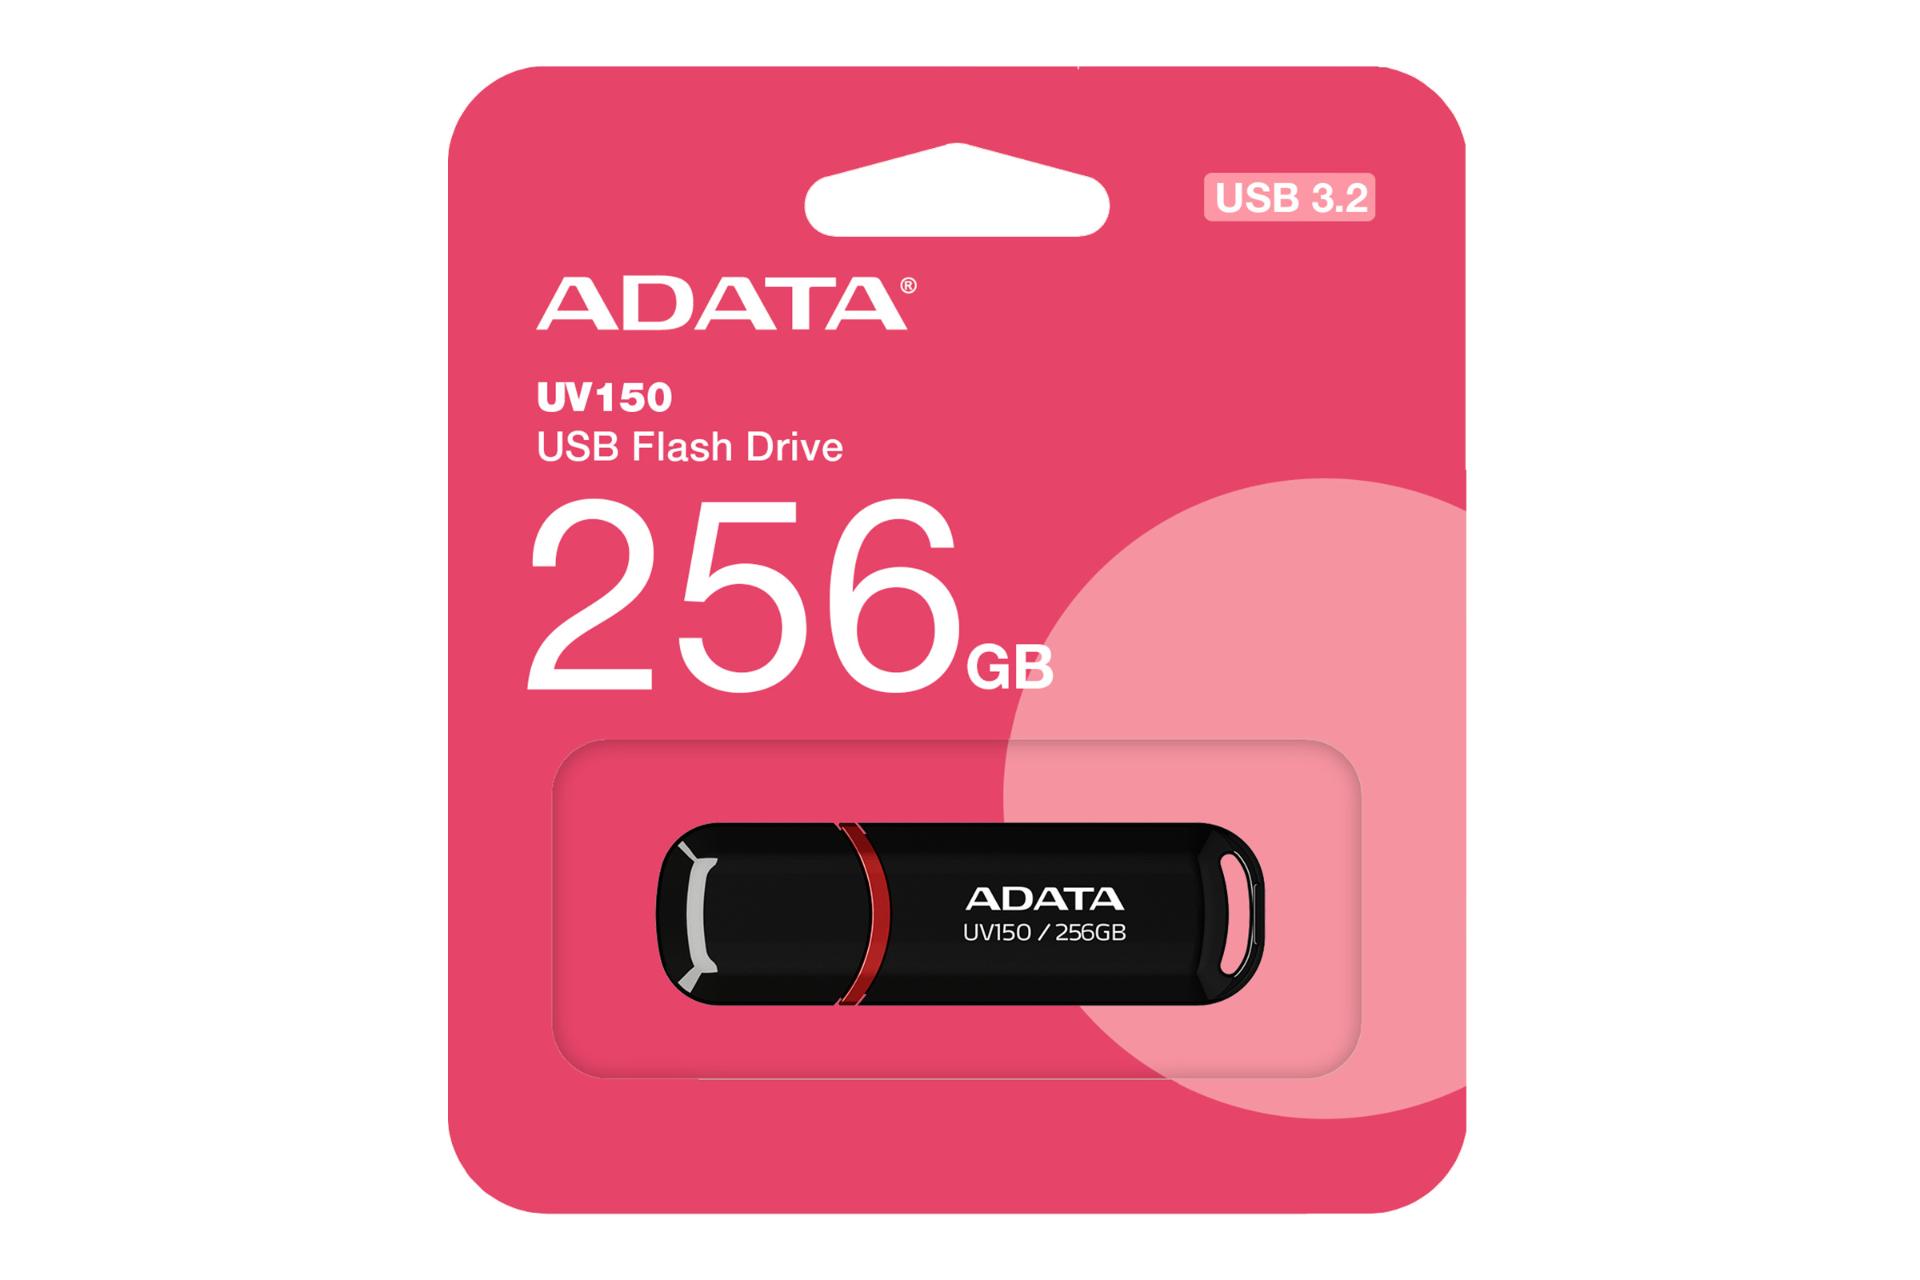 جعبه فلش مموری ای دیتا ADATA UV150 256GB USB 3.2